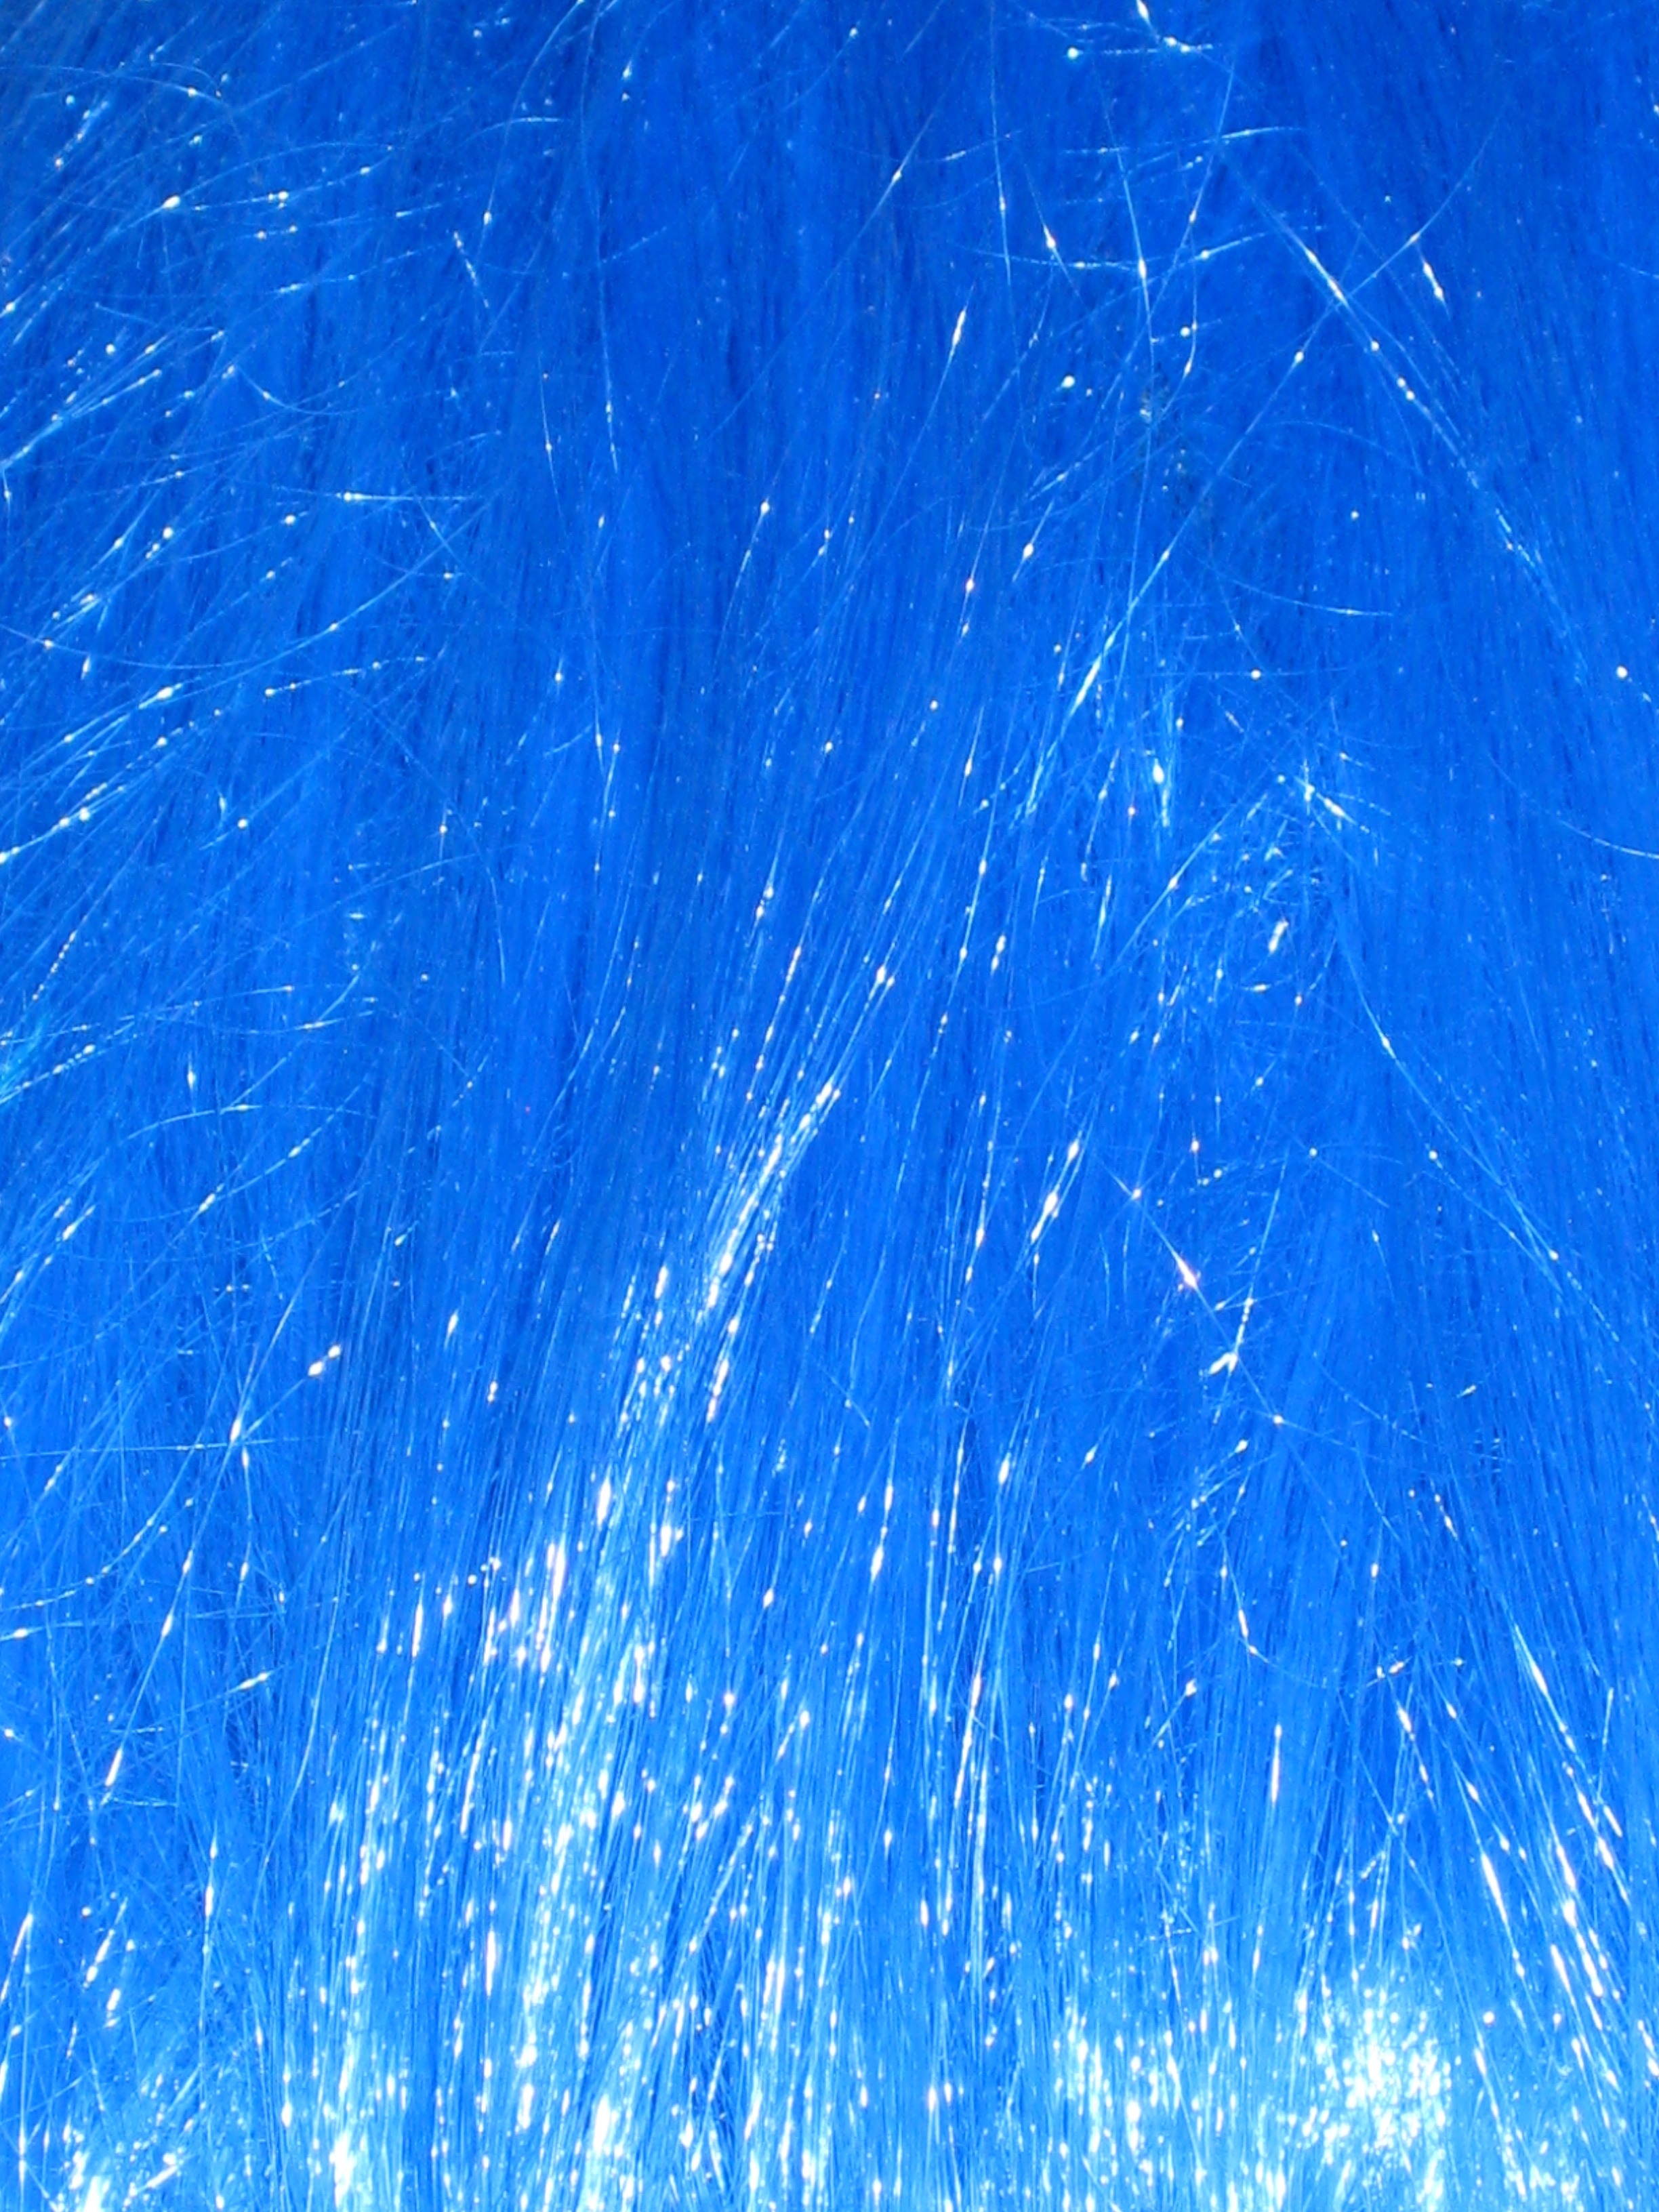 blue textile